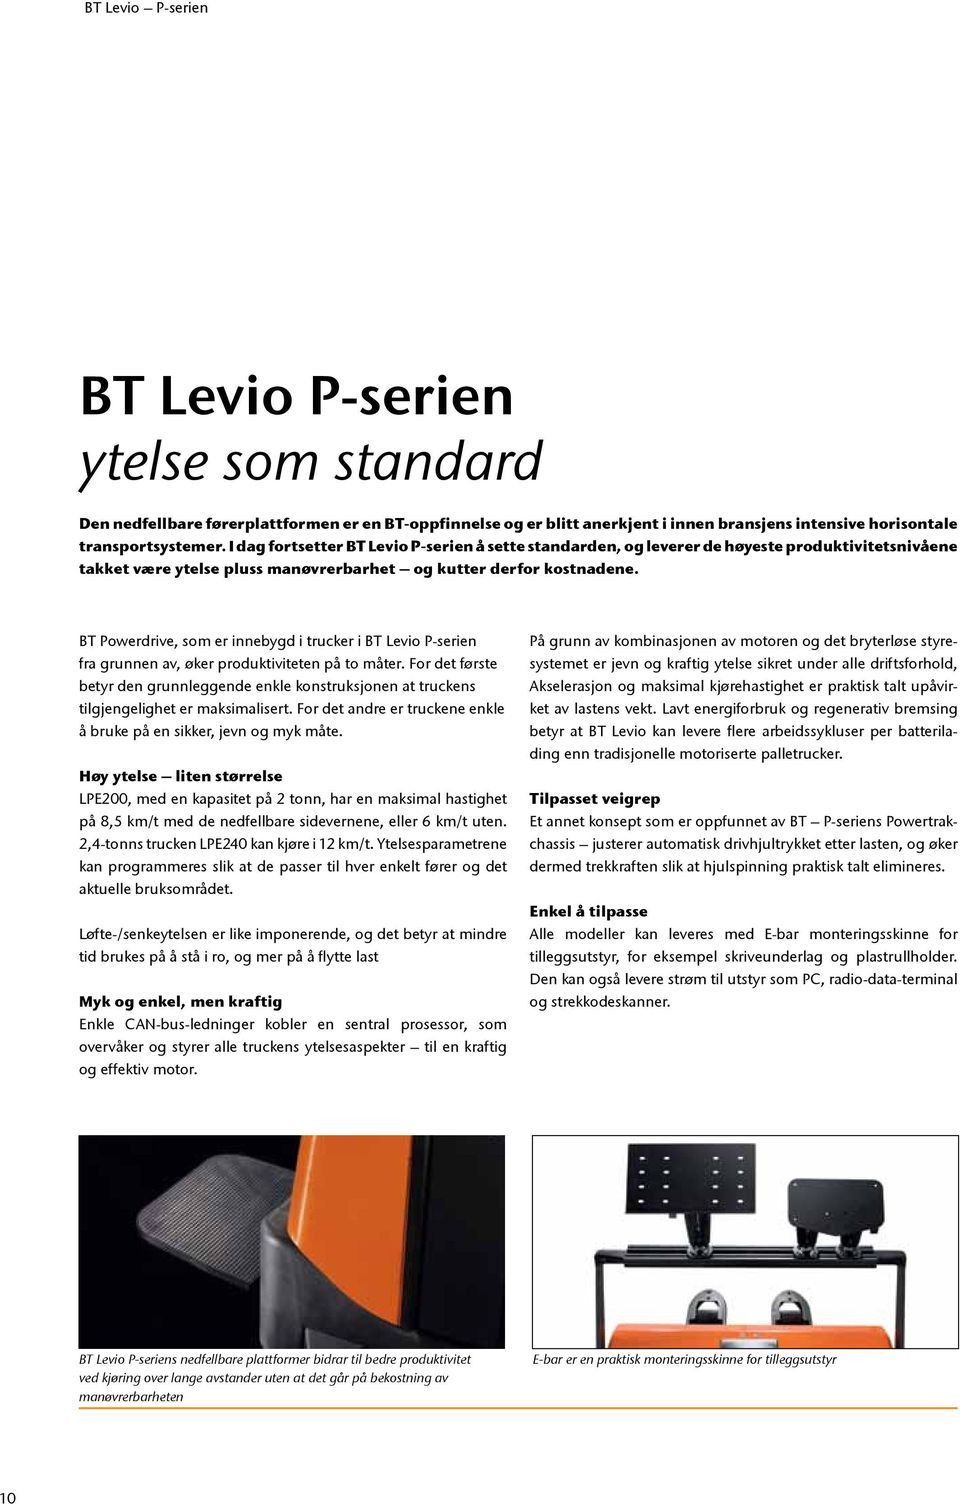 BT Powerdrive, som er innebygd i trucker i BT Levio P-serien fra grunnen av, øker produktiviteten på to måter.